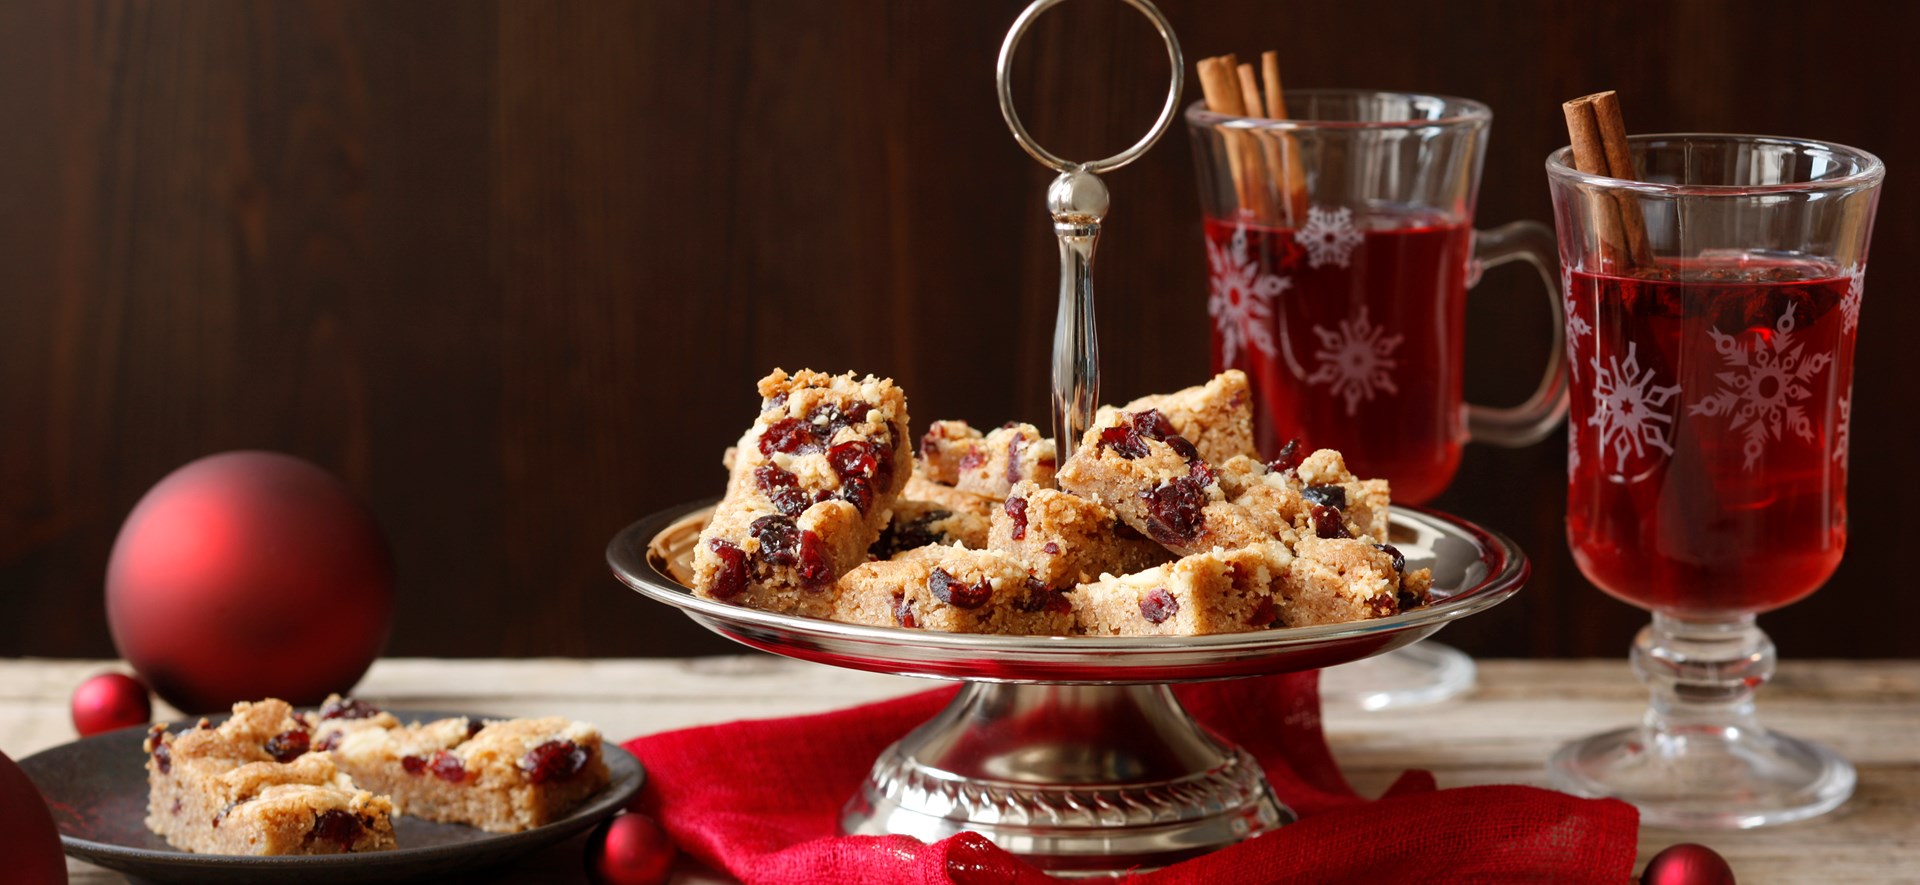 Bild zu Cranberry-Zimt-Streifen-Kekse